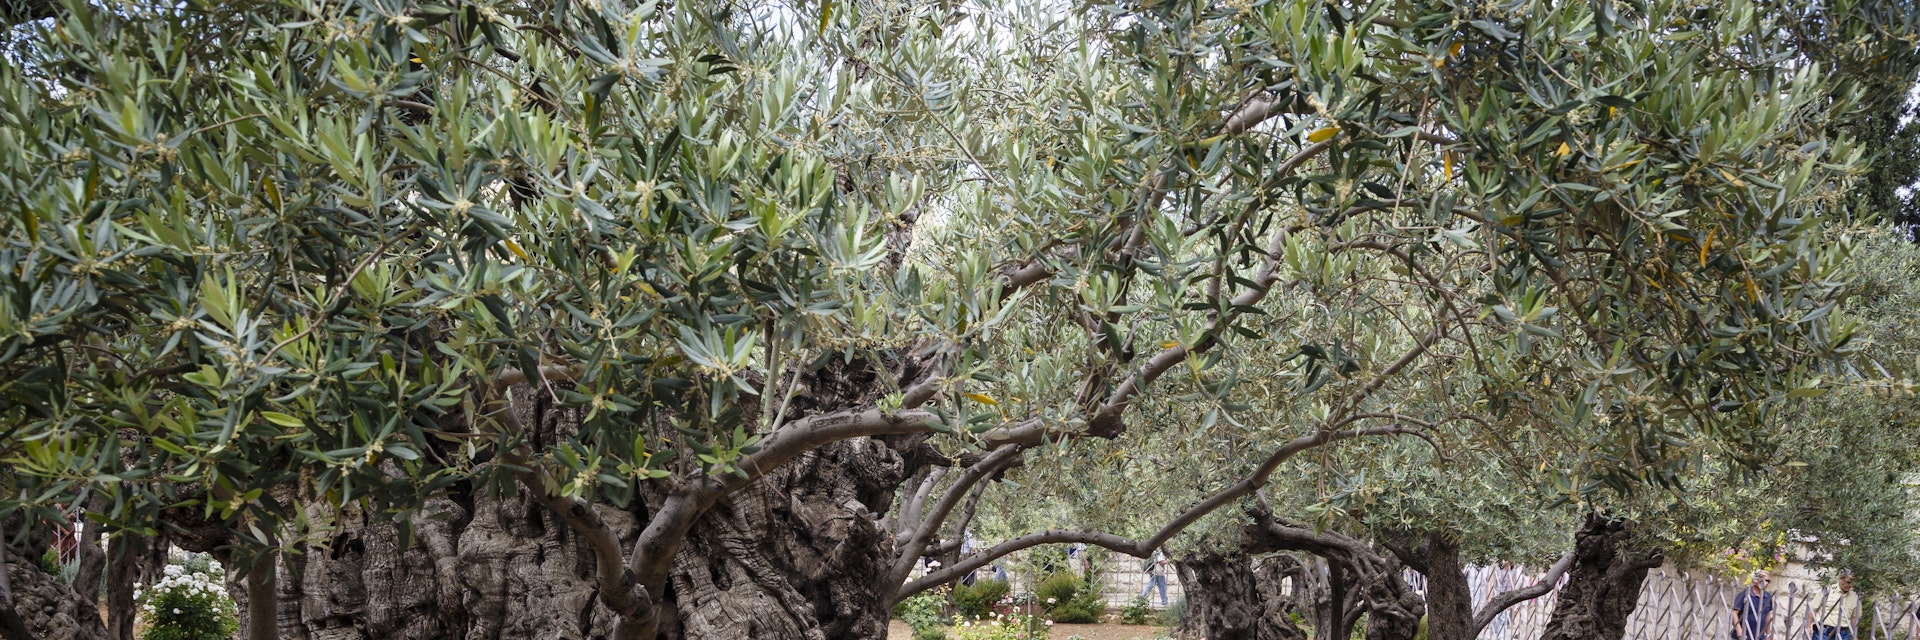 Olive trees in the Garden of Gethsemane, Jerusalem, Israel, Middle East